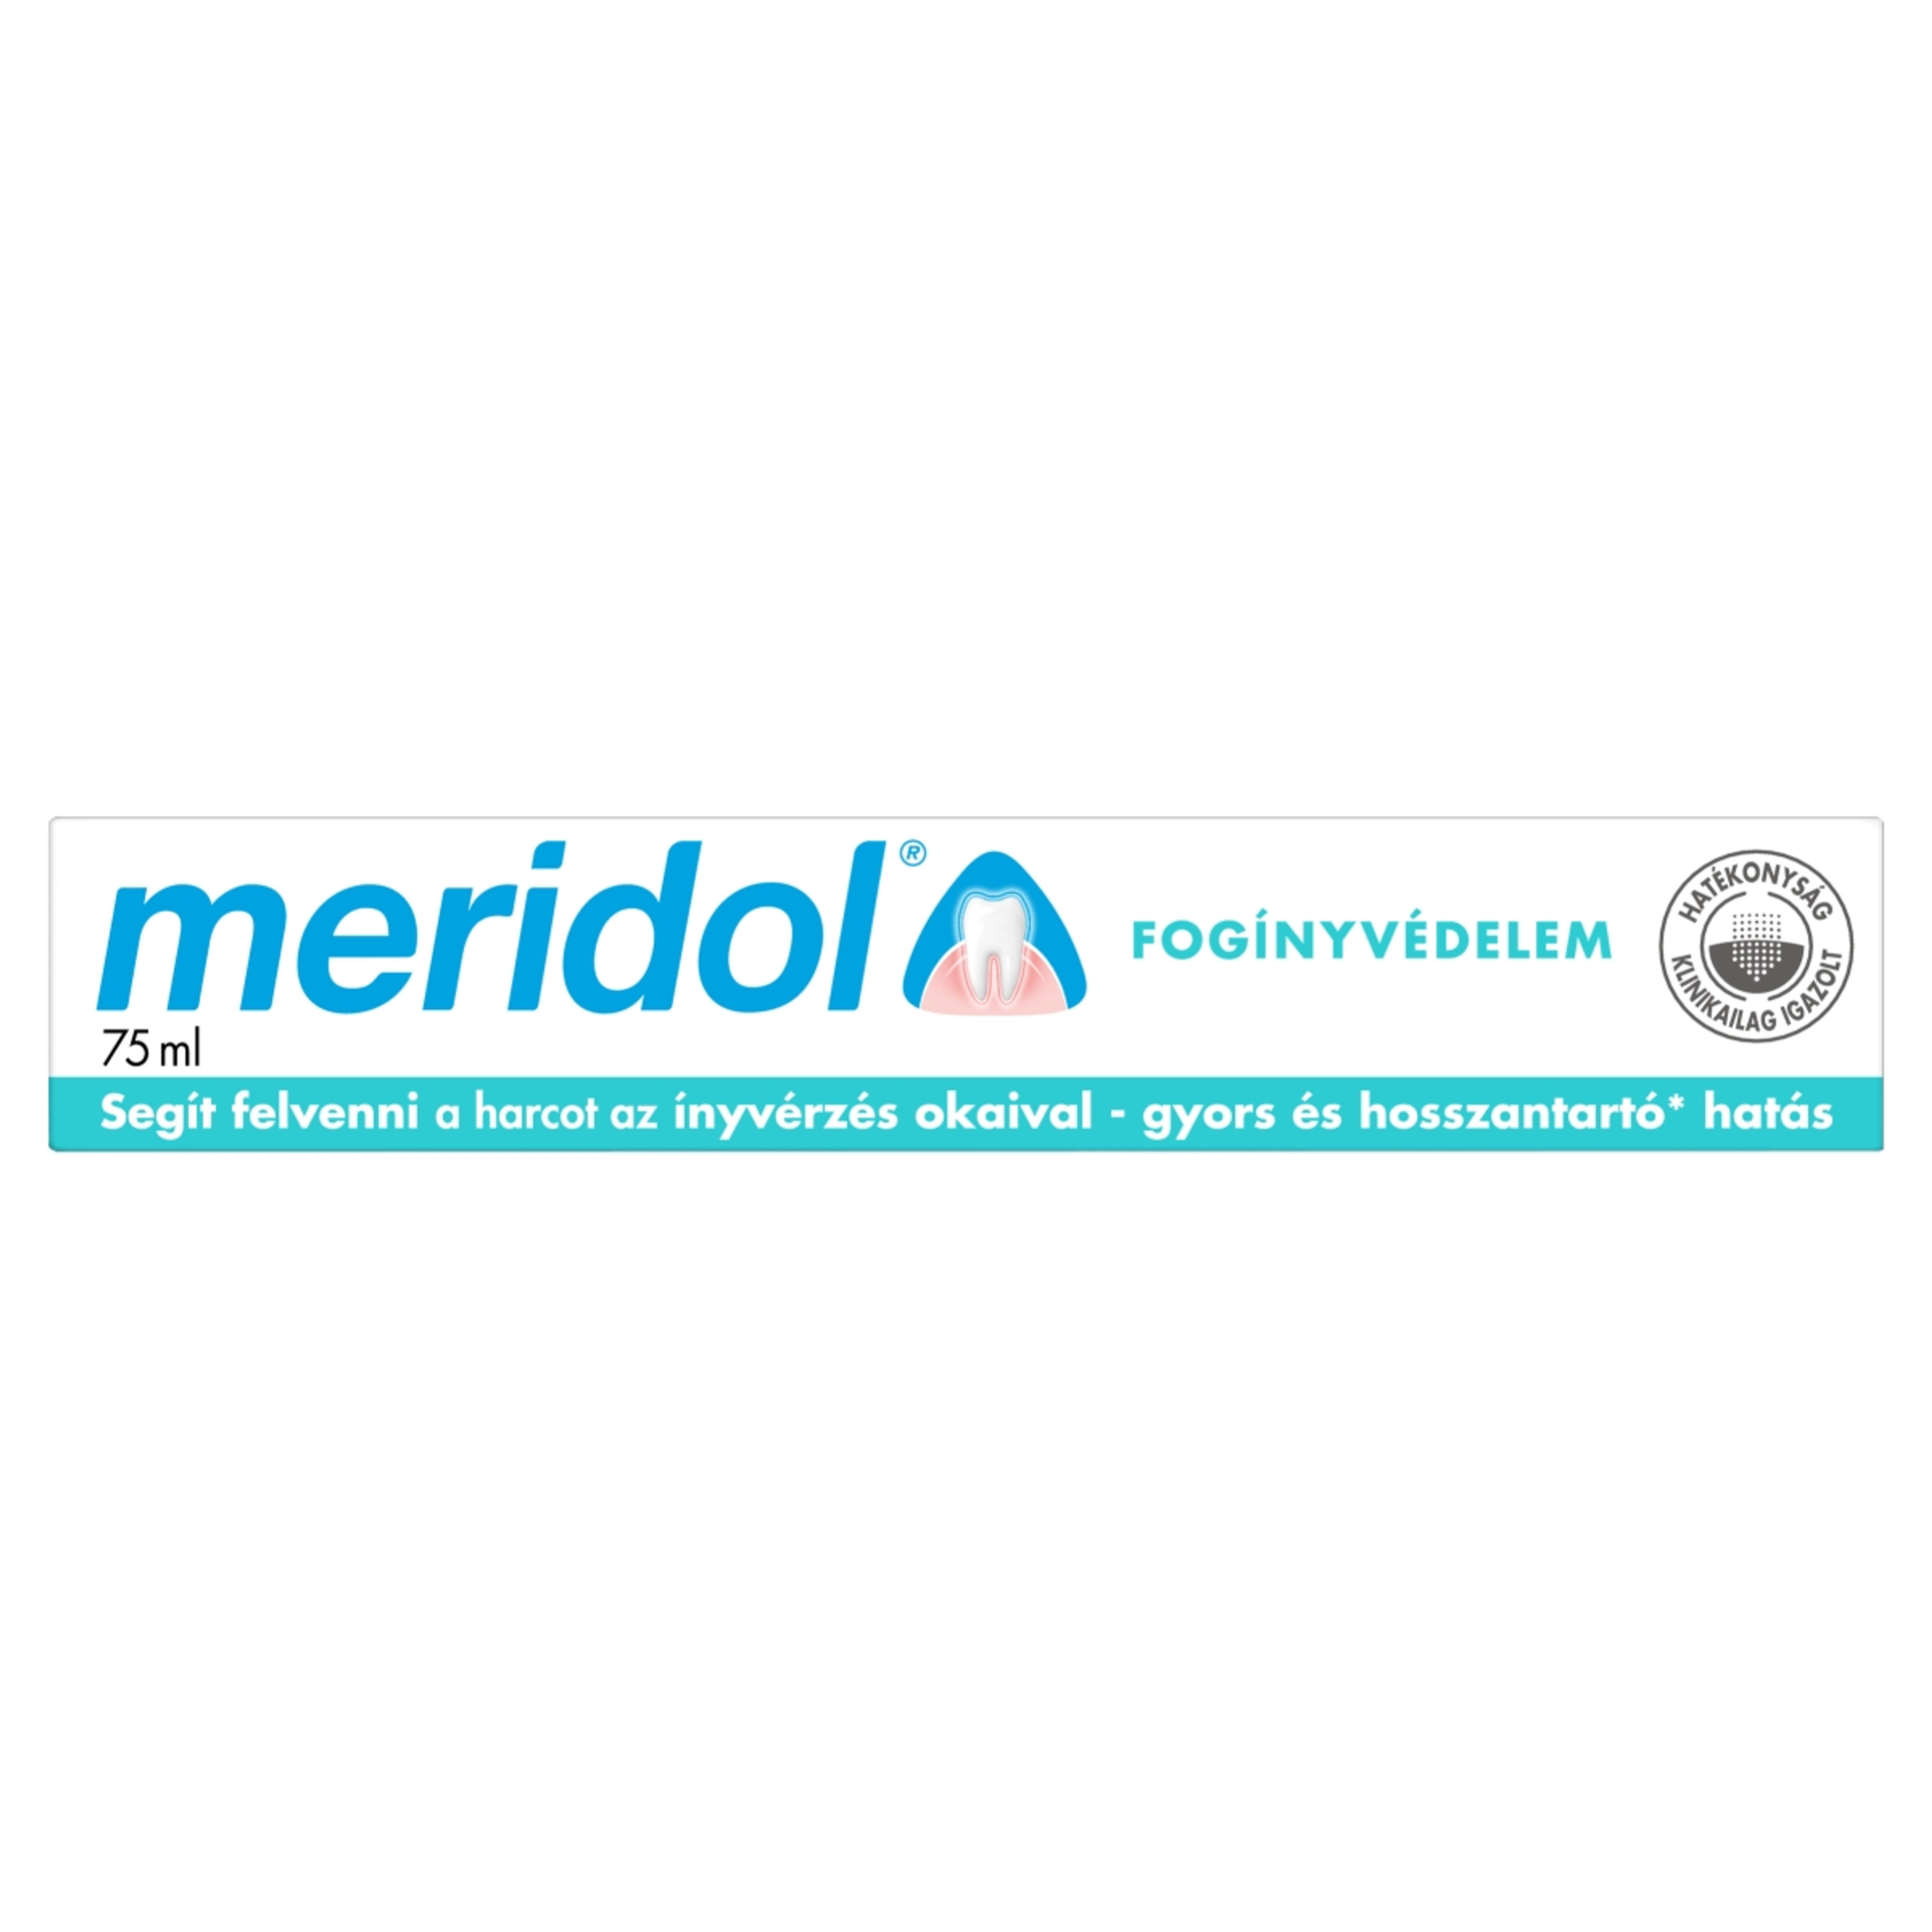 Meridol Fogínyvédelem fogkrém - 75 ml-6